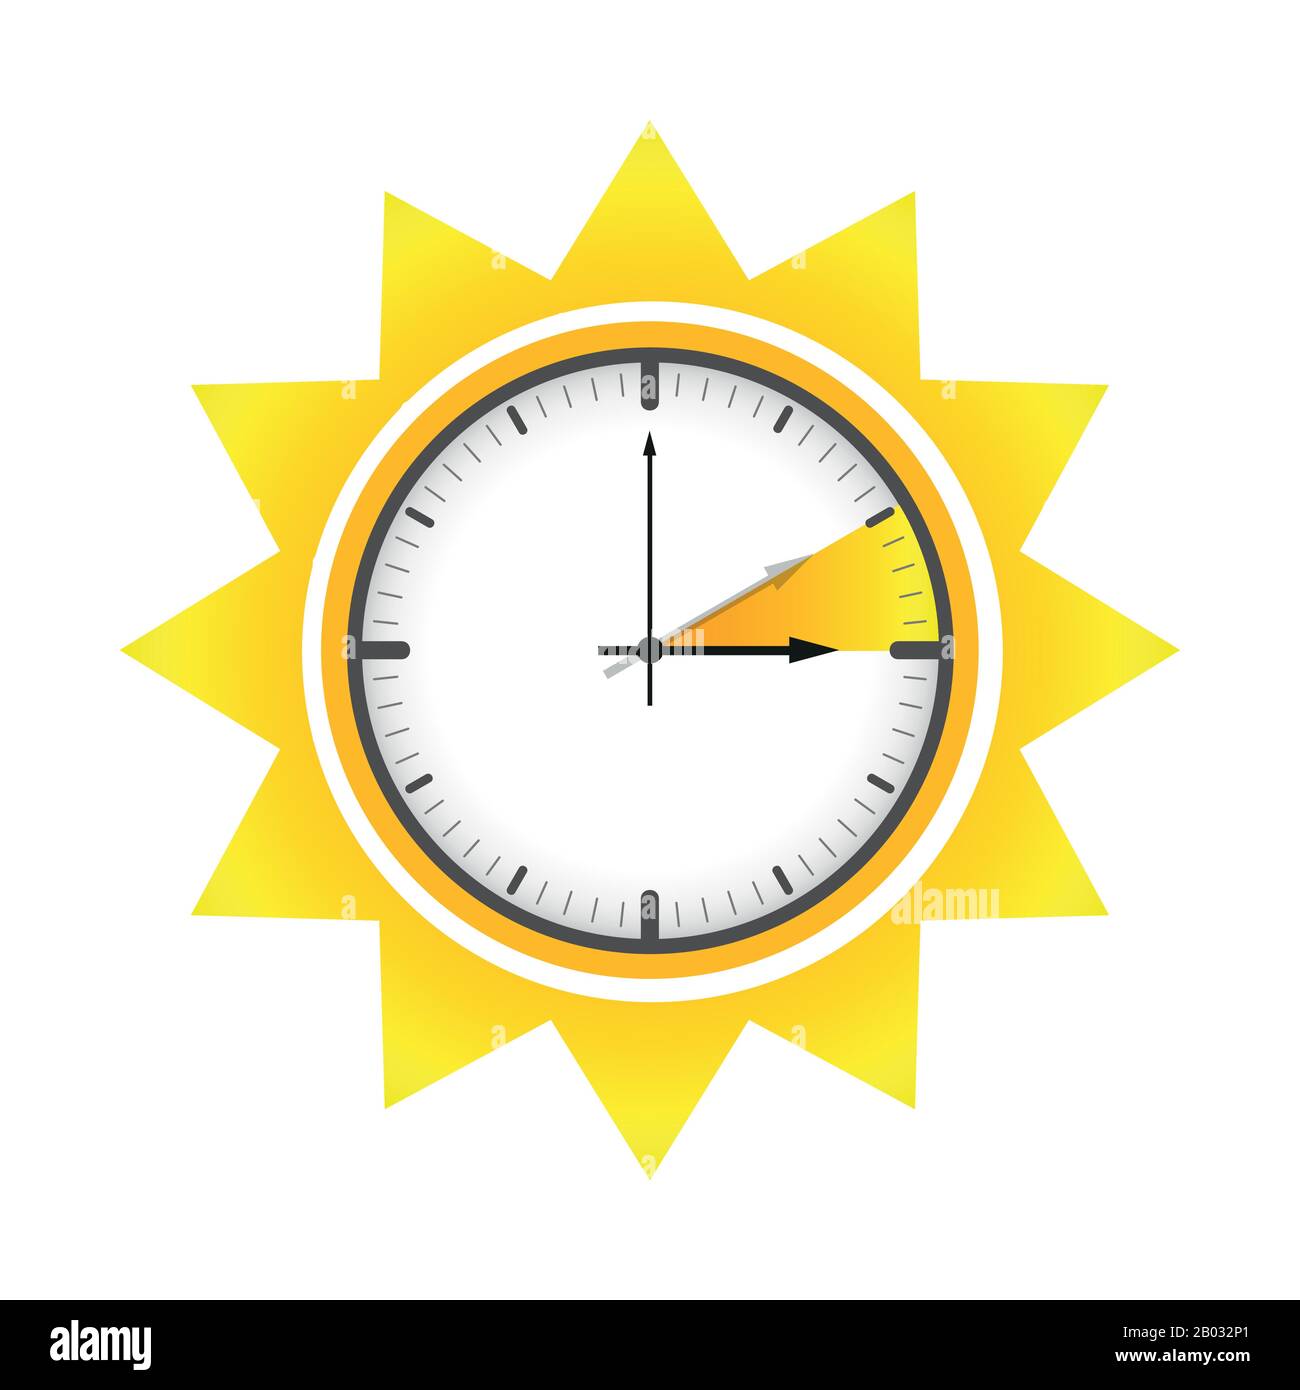 Clock Illustration End of Summer Time Stock Illustration